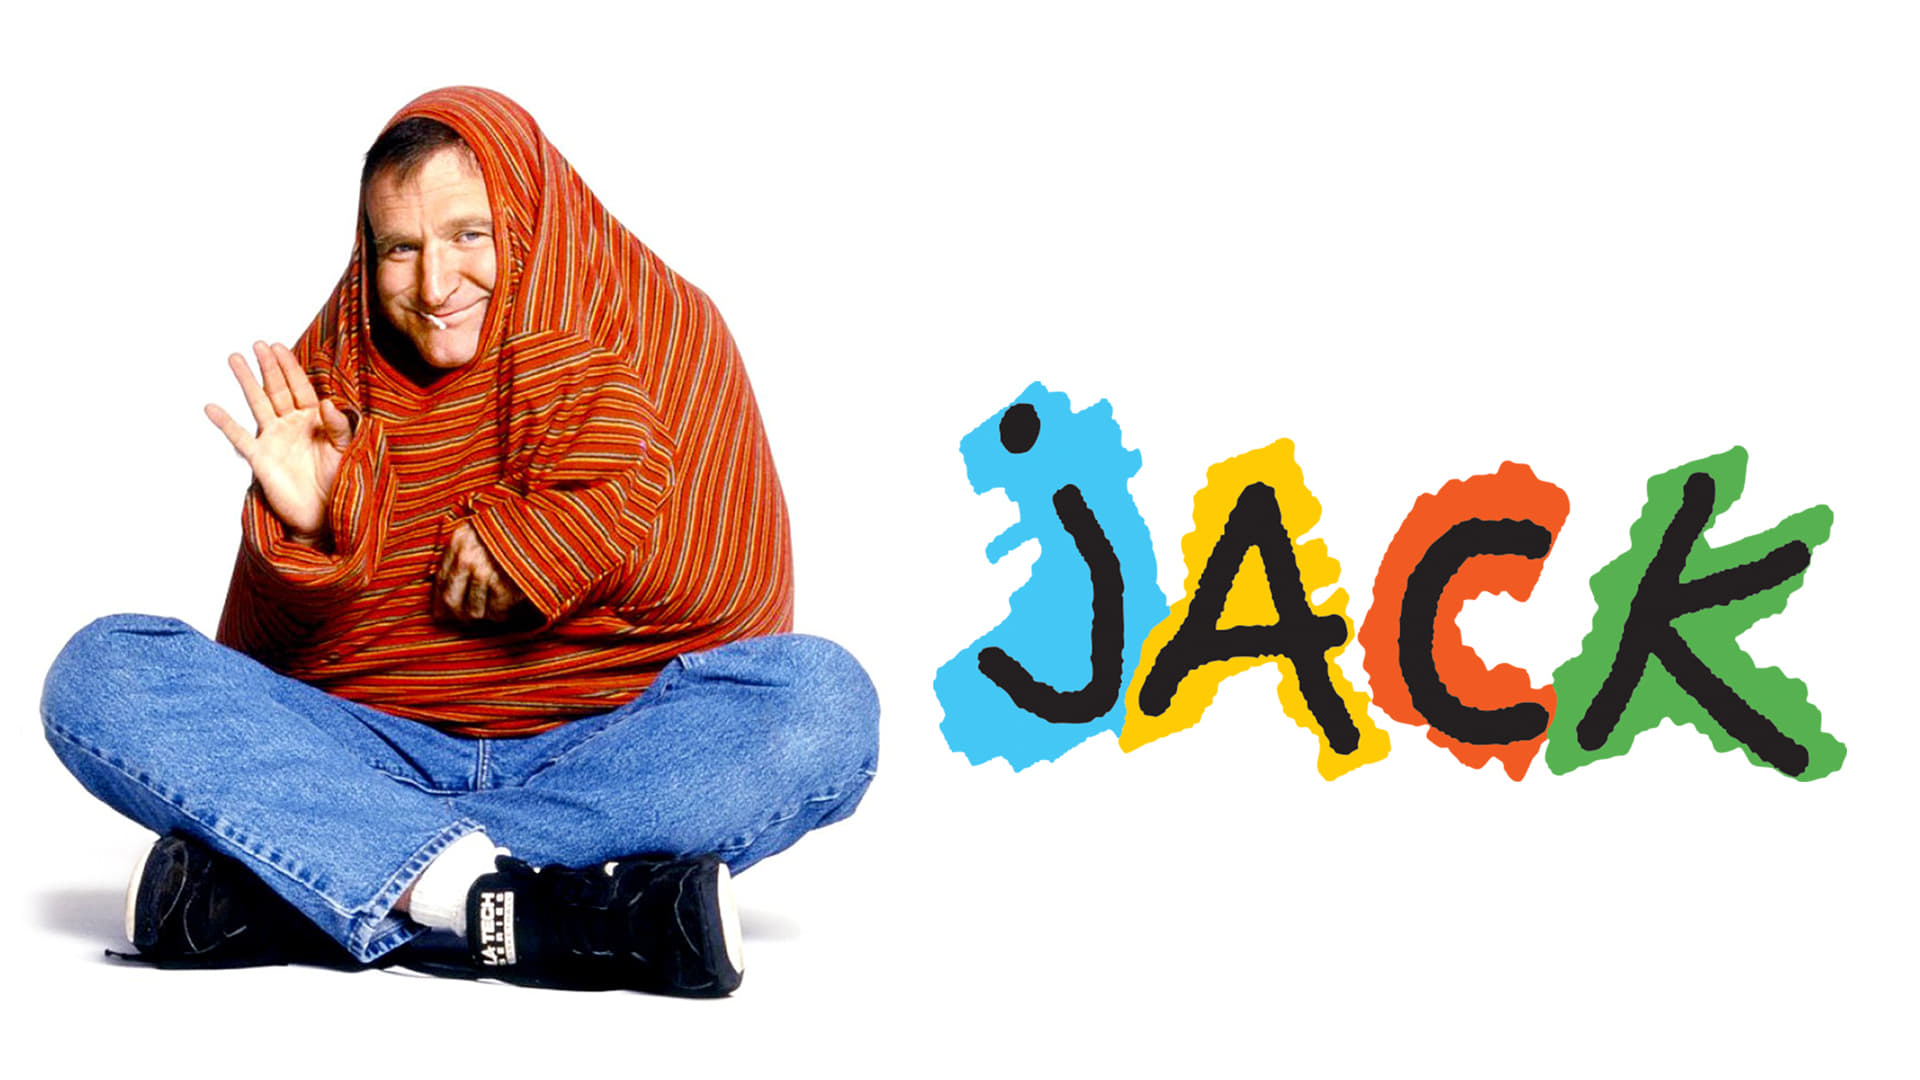 دانلود فیلم Jack 1996